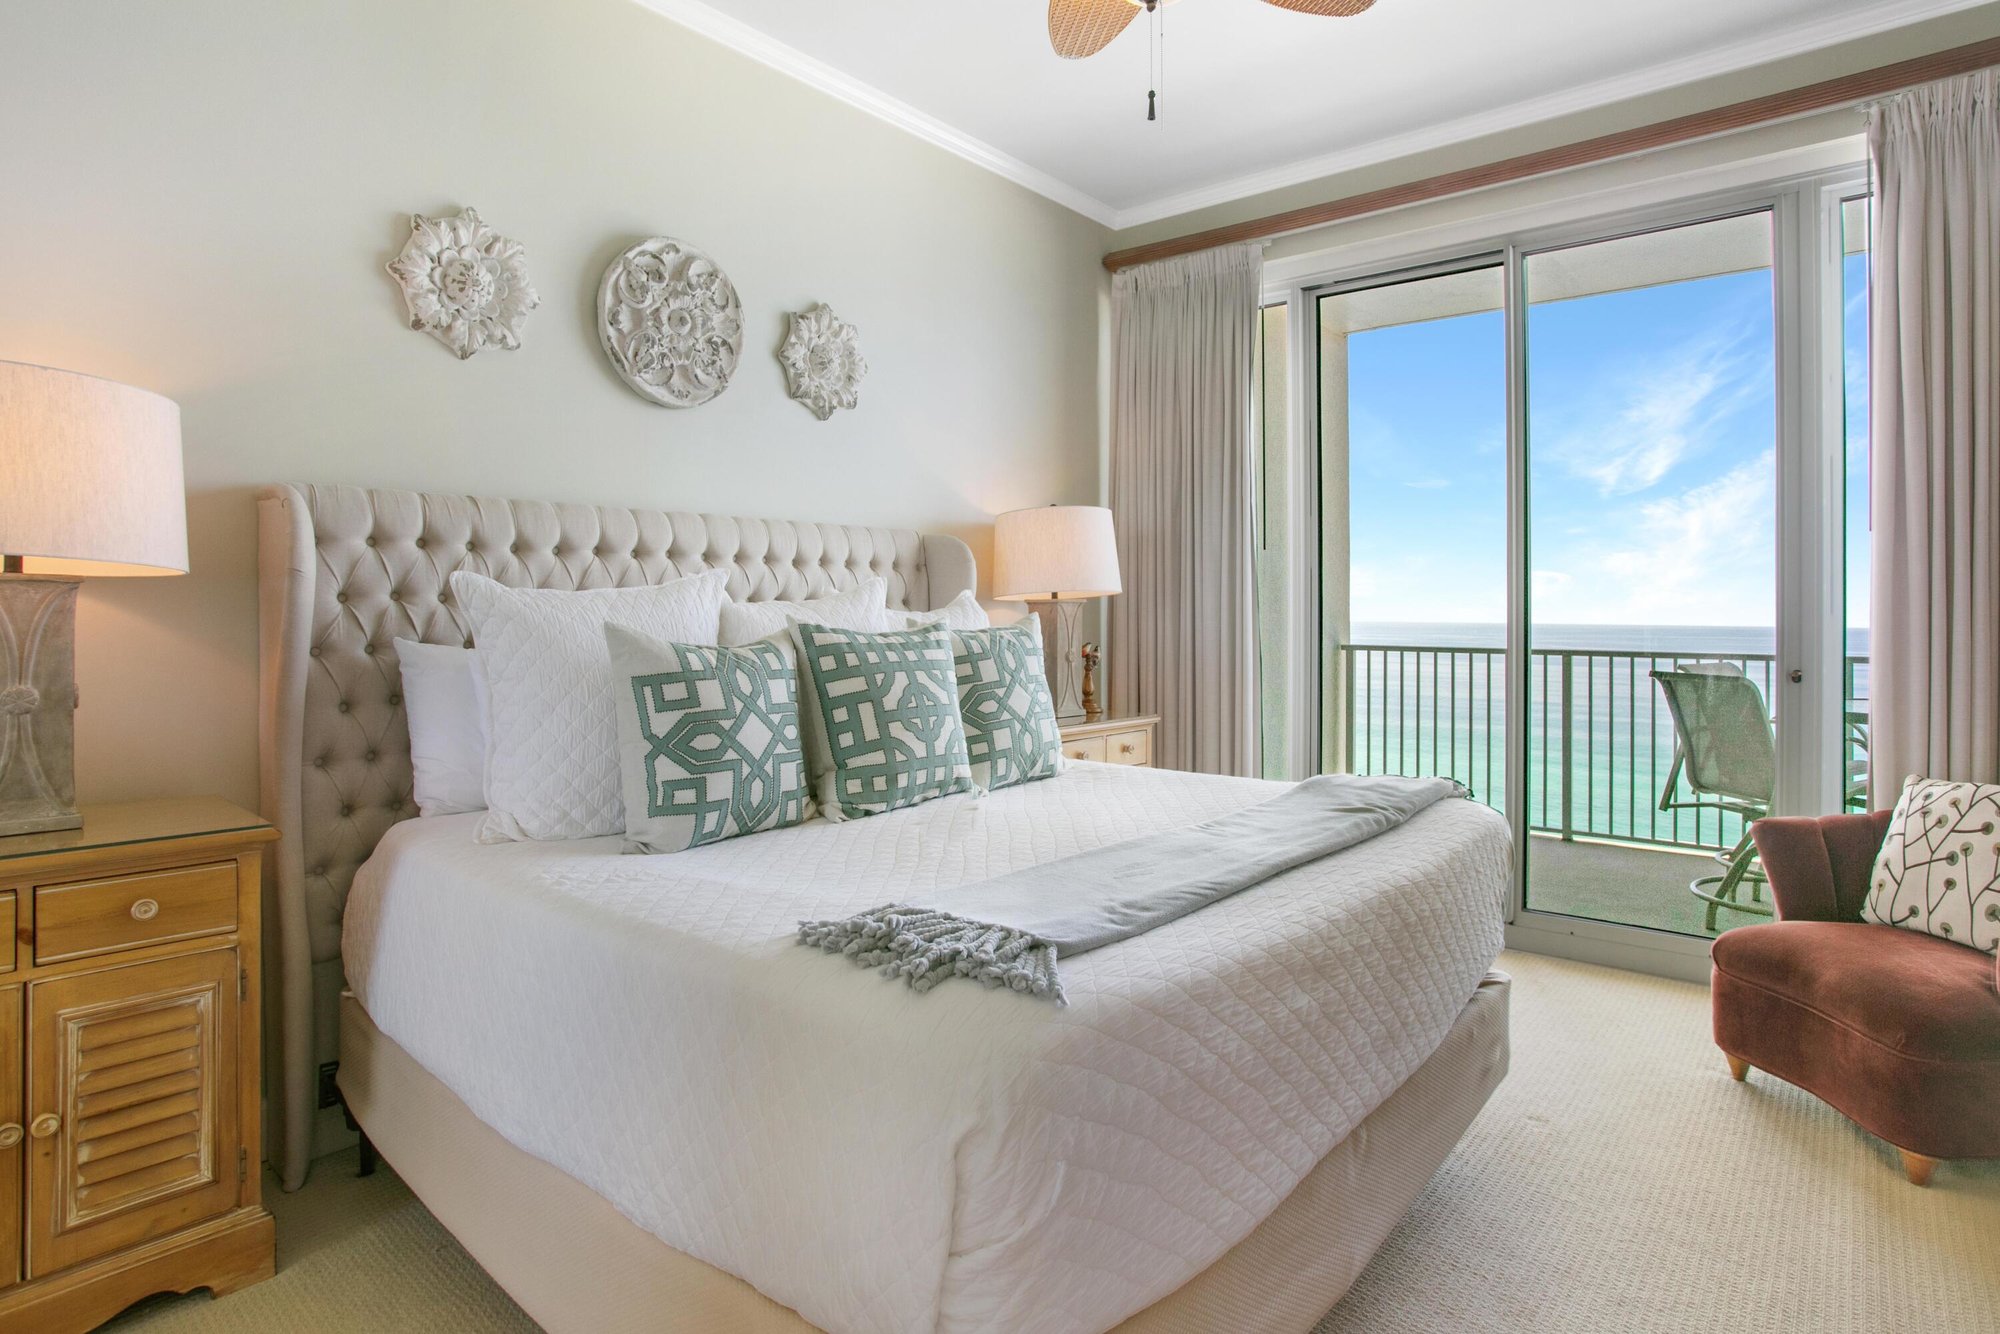 $1M Miramar Beach Real Estate - Home vs Condo